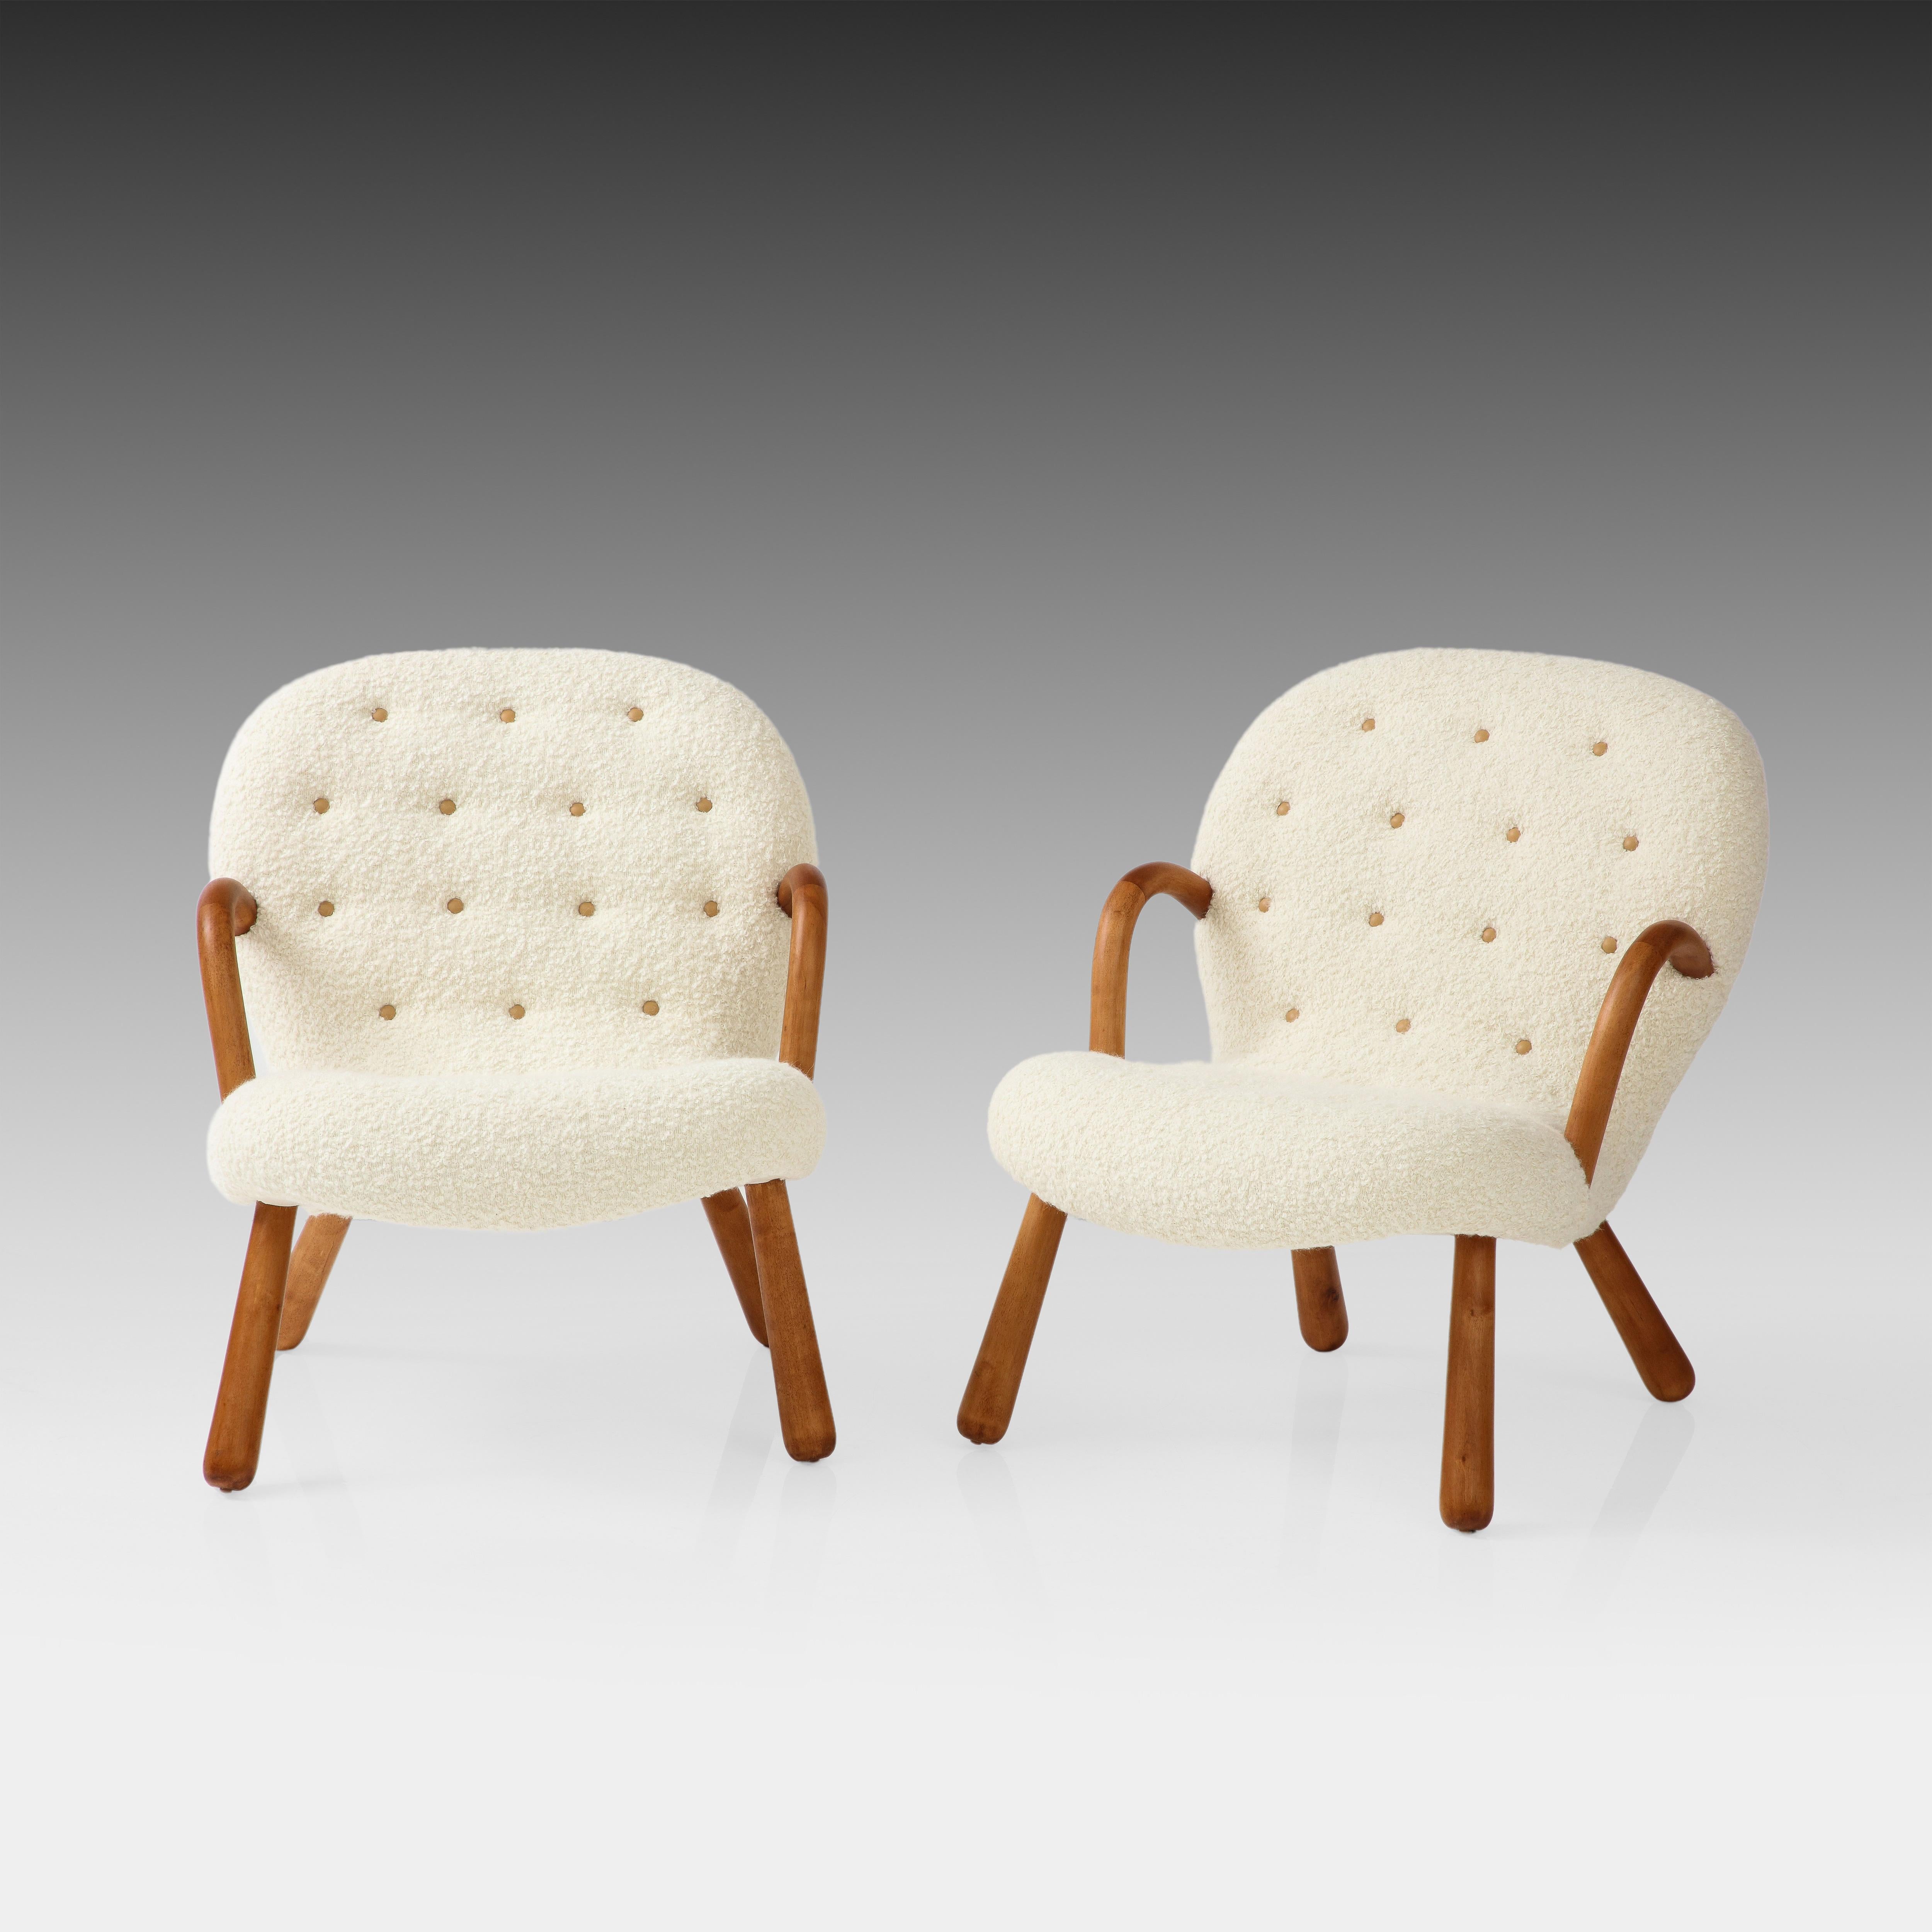 Arnold Madsen für Madsen & Schubell Seltenes Paar Clam Stühle mit Buchenarmlehnen und -beinen, gepolstert mit elfenbeinfarbenem Bouclé und Kamellederknöpfen an Rückenlehne und Sitz, Dänemark. 1944. Diese ikonischen Clam-Stühle haben eine